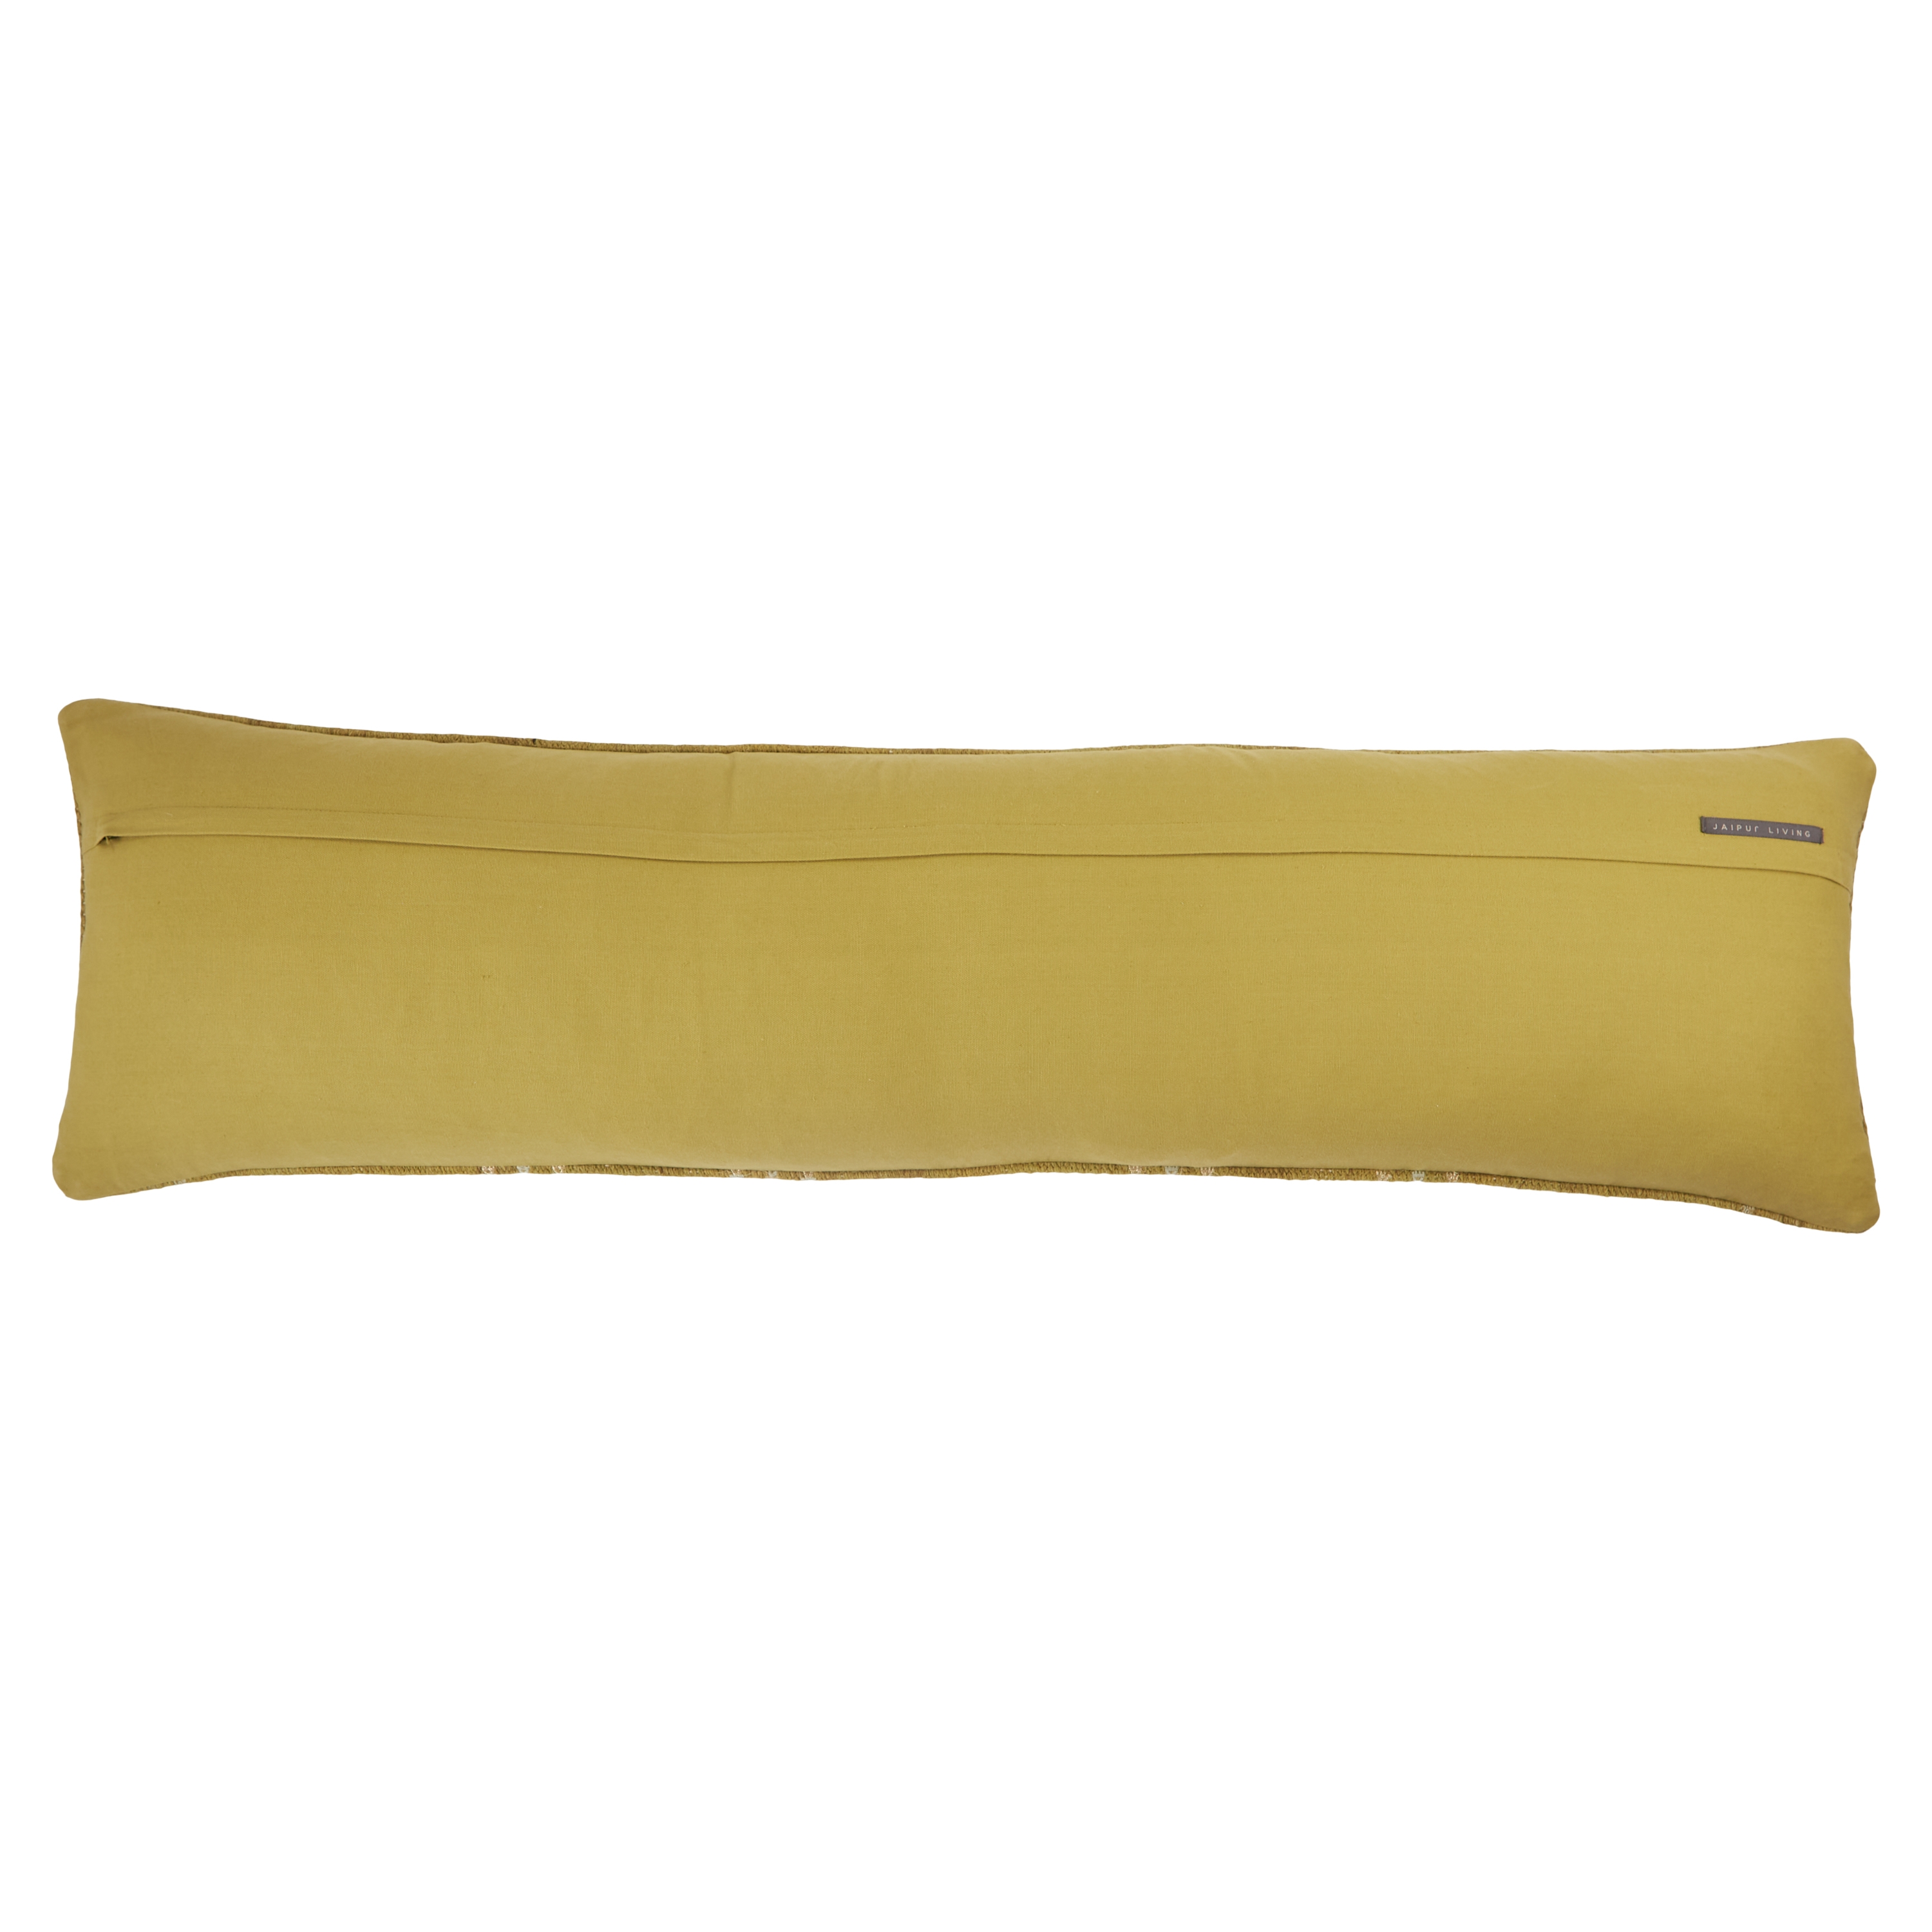 Eisa Extra Long Lumbar Pillow, Green & Yellow, 48" x 13" - Image 2